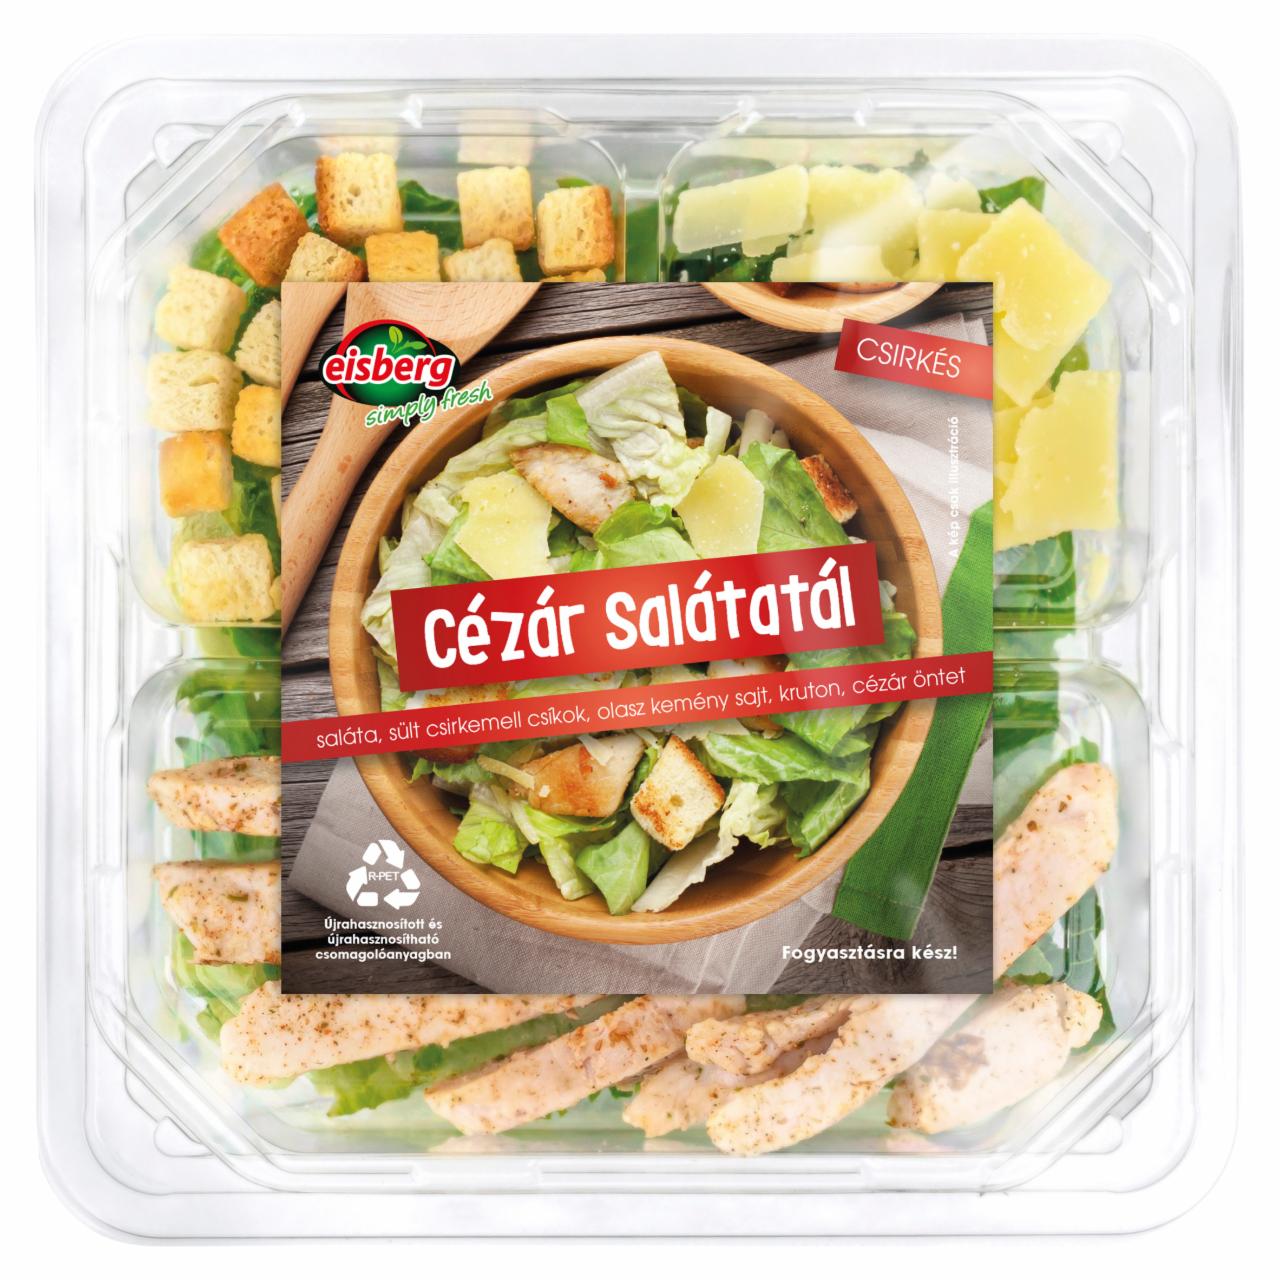 Képek - Eisberg csirkés Cézár salátatál 210 g